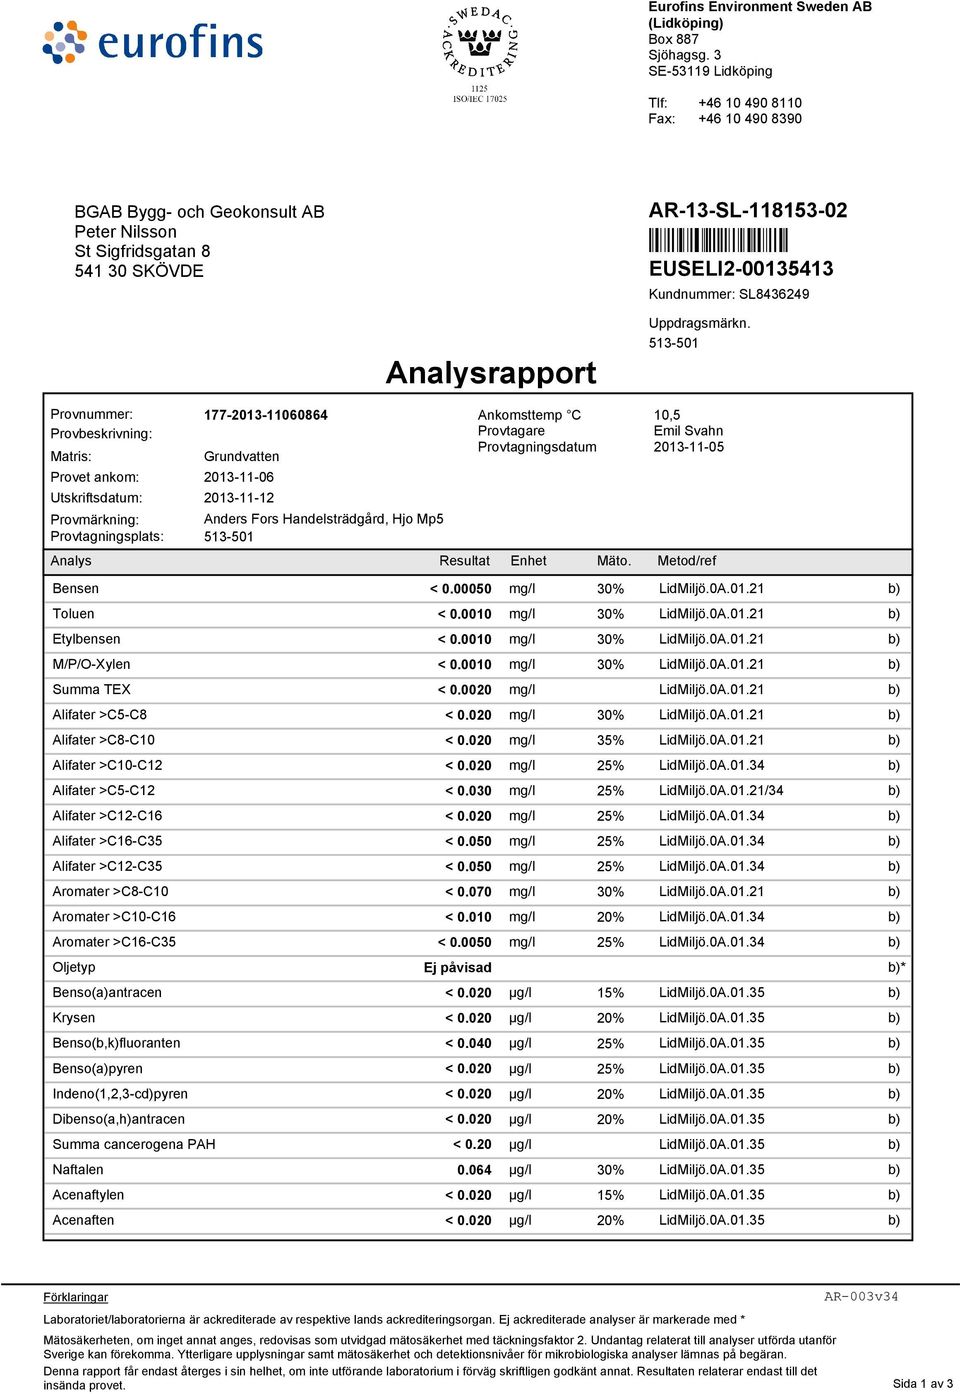 SL8436249 Analysrapport Uppdragsmärkn.